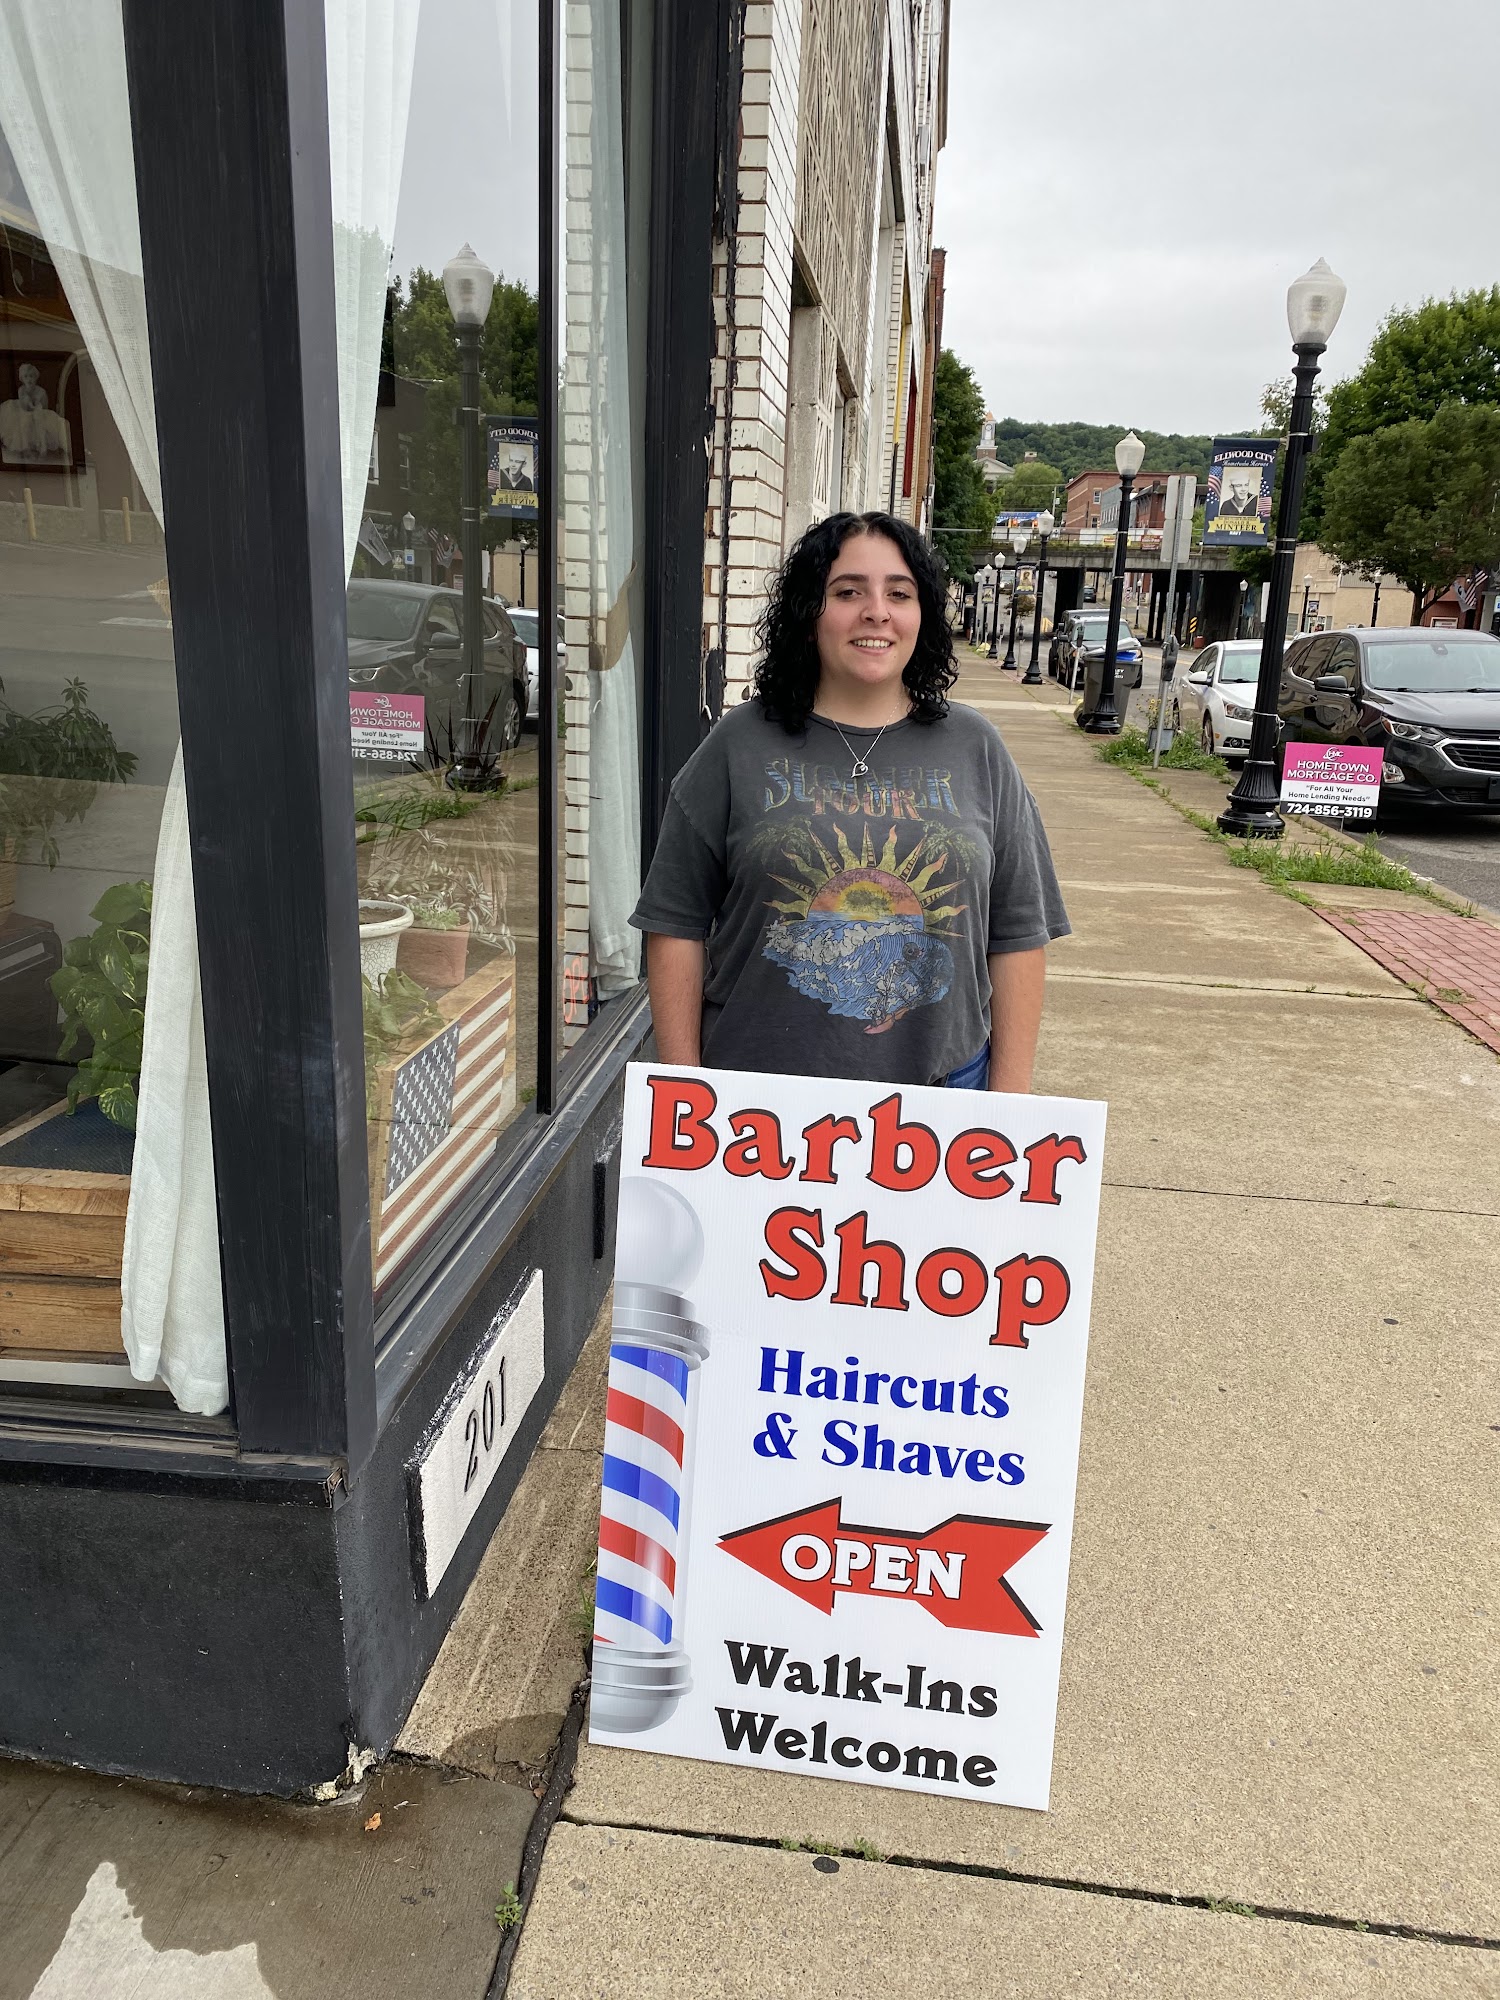 Kathy's Barber Shop 201 5th St, Ellwood City Pennsylvania 16117